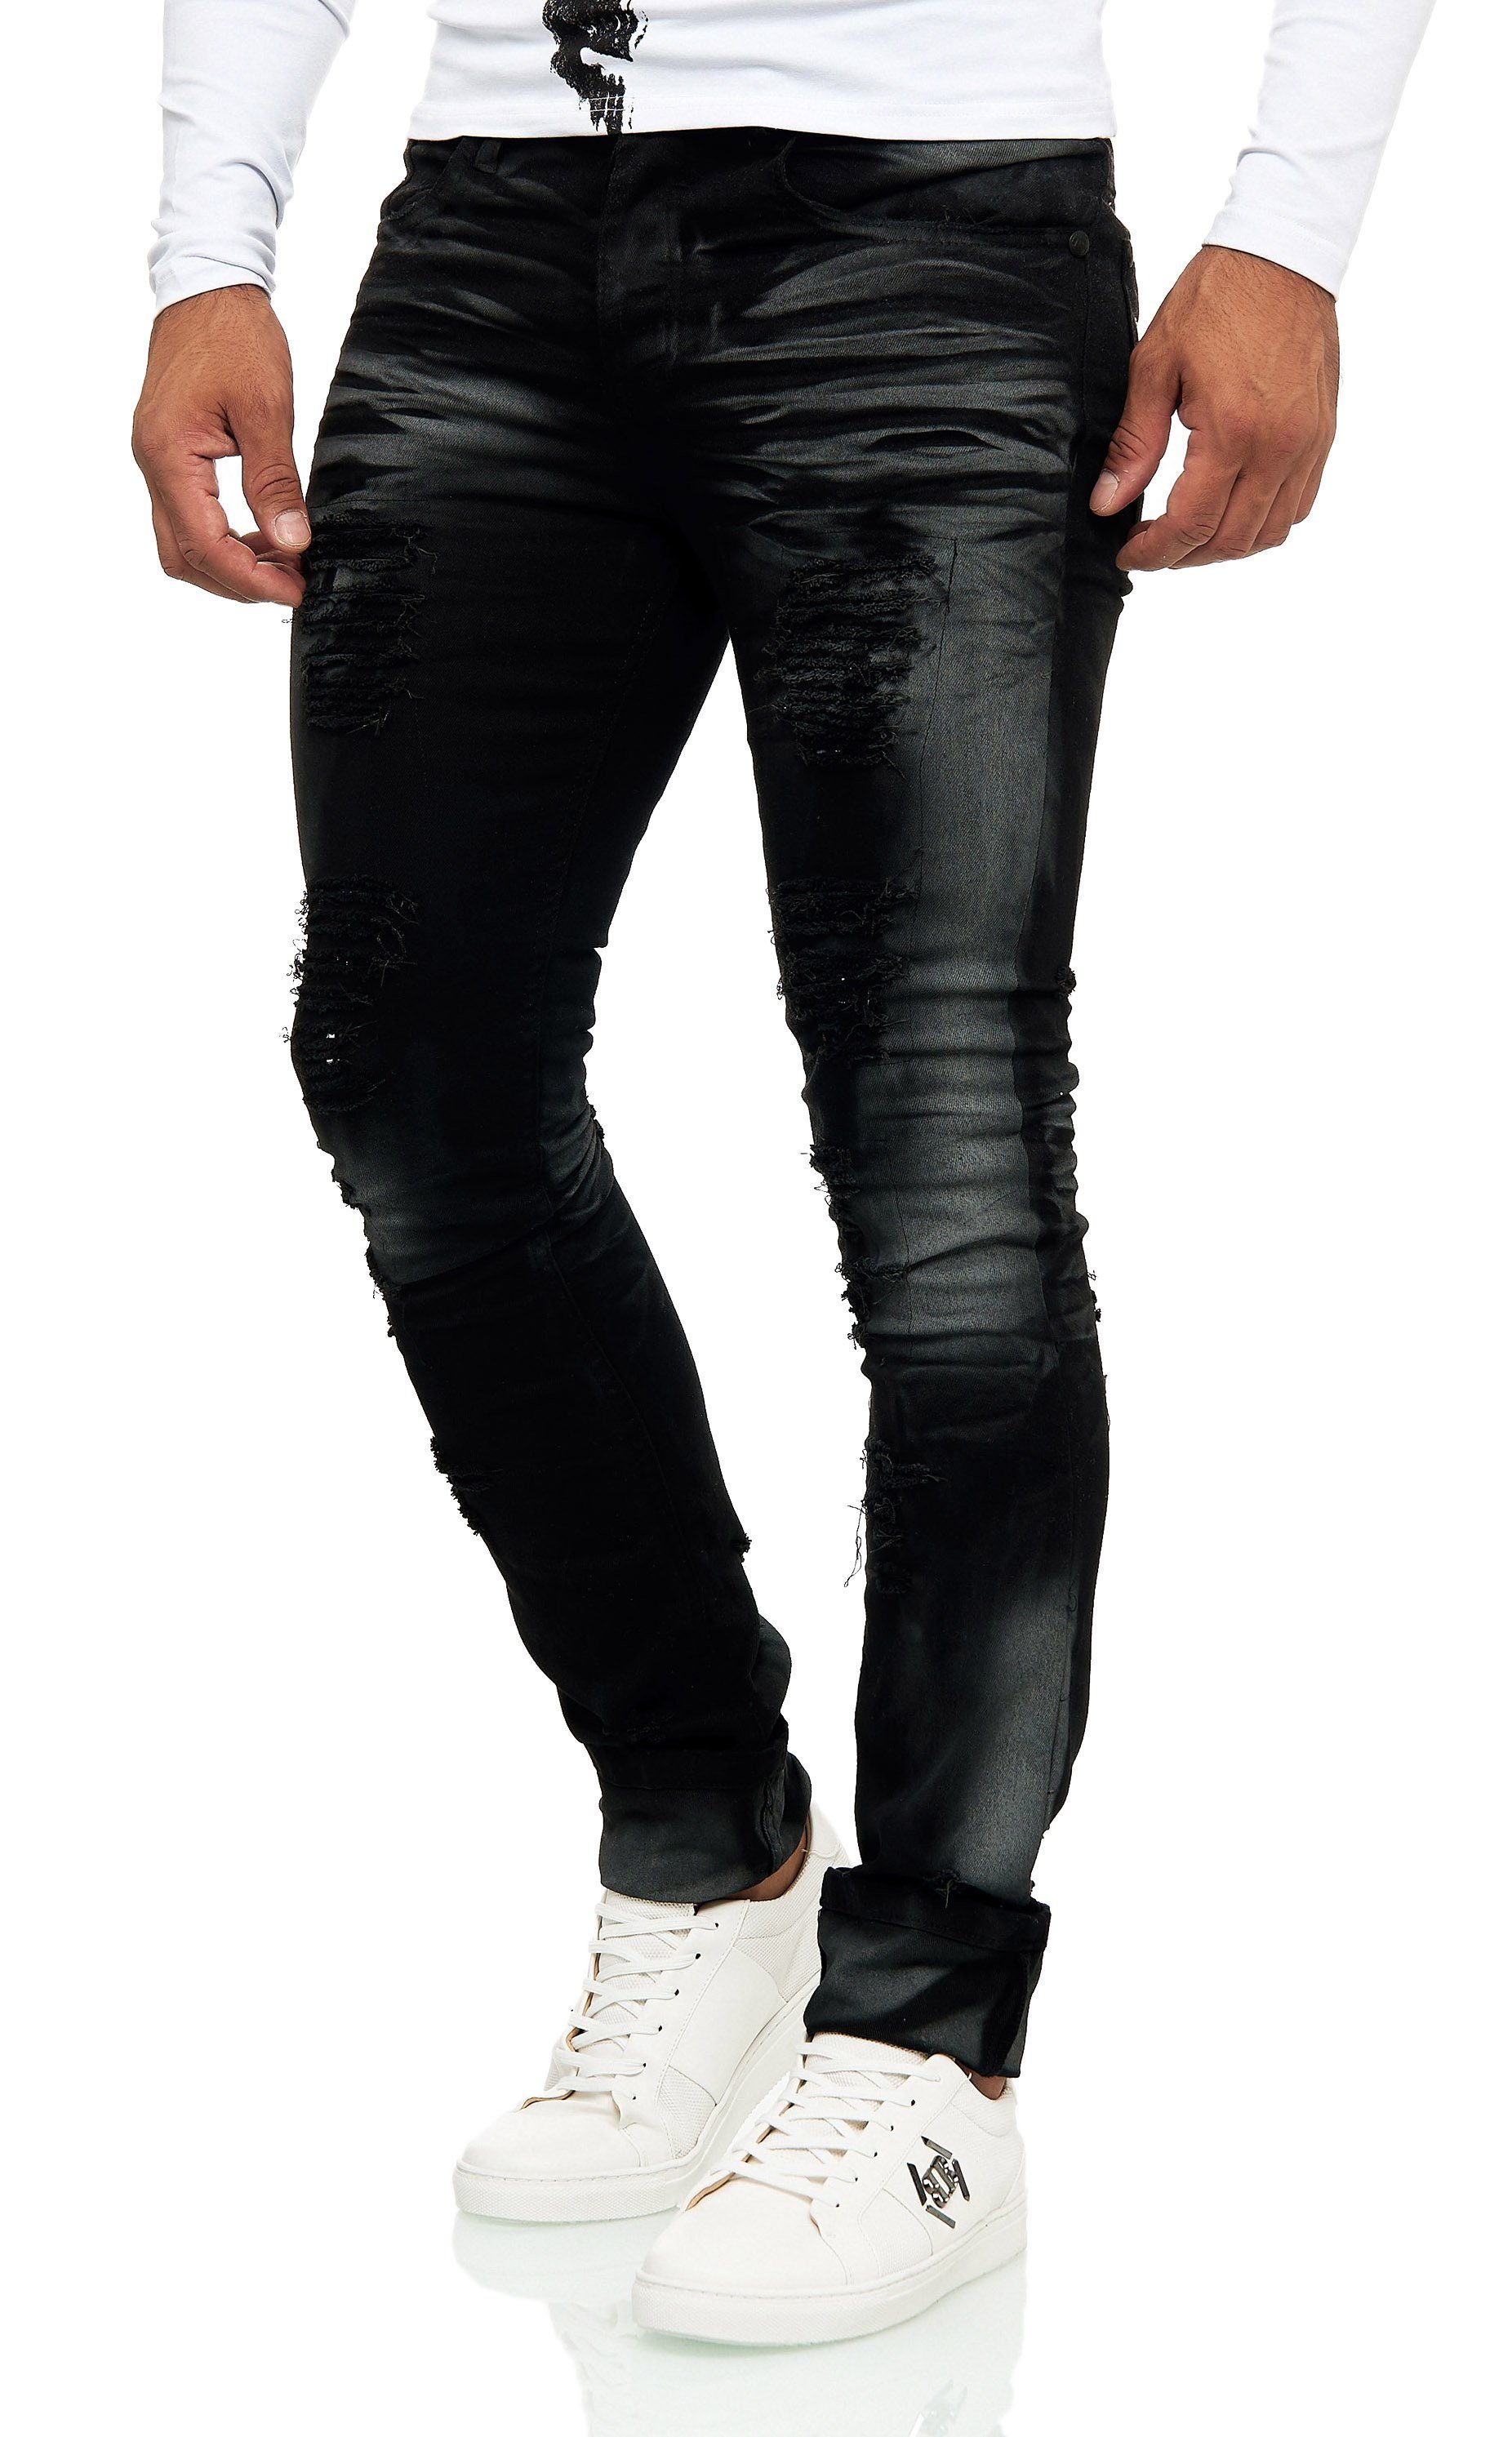 Waschung Destroyed-Look KINGZ auffälliger mit im Slim-fit-Jeans